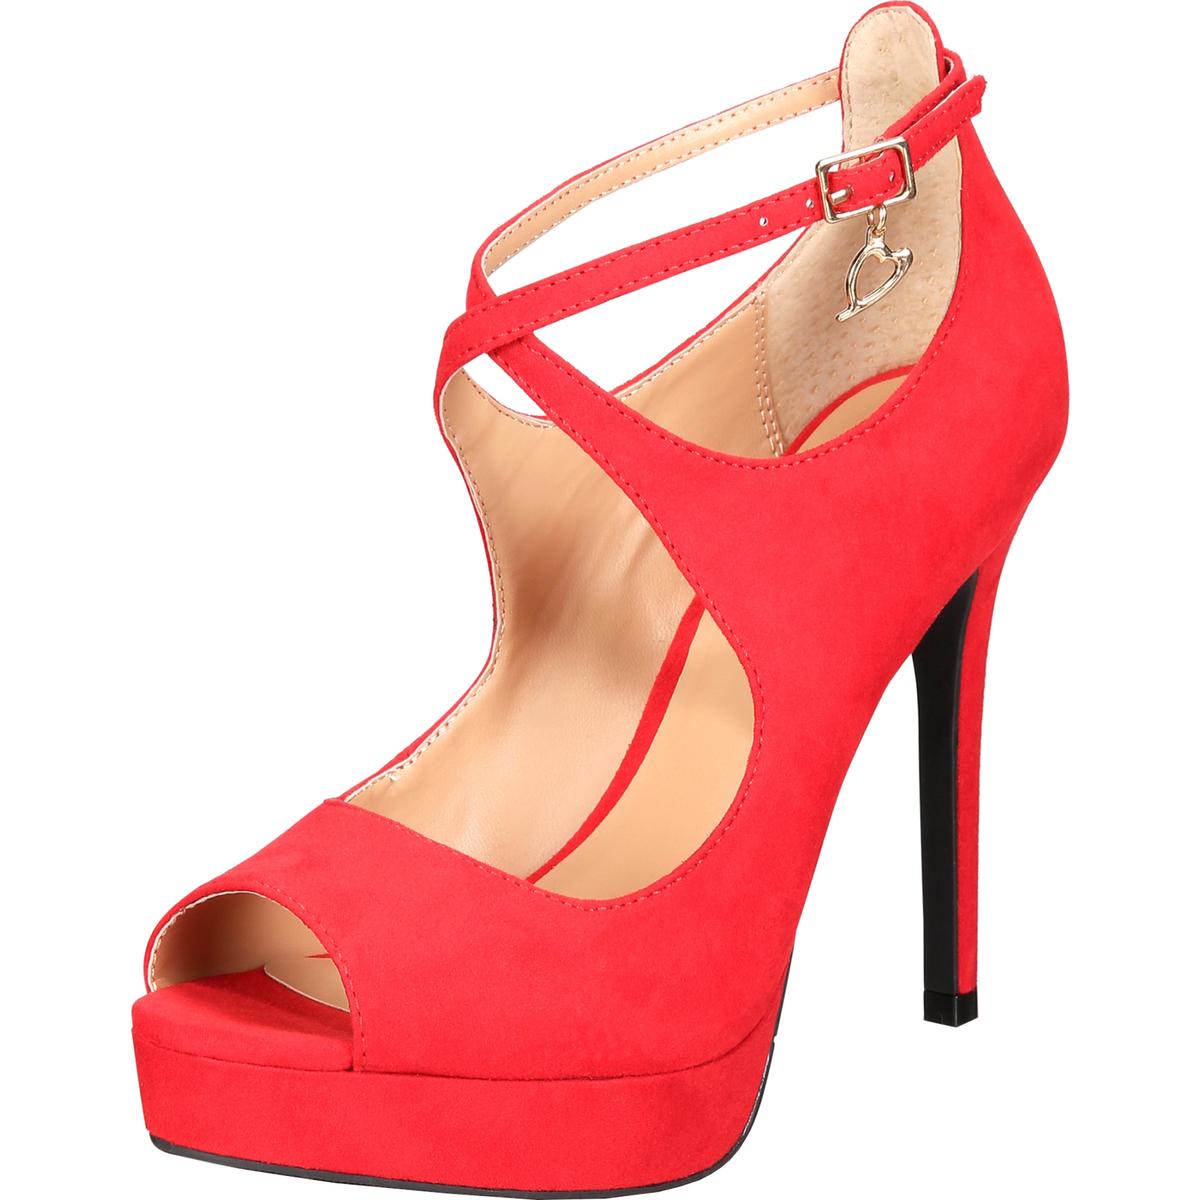 Thalia Sodi Womens Chelsie 2 Red Platform Heels Shoes 11 Medium (B,M ...